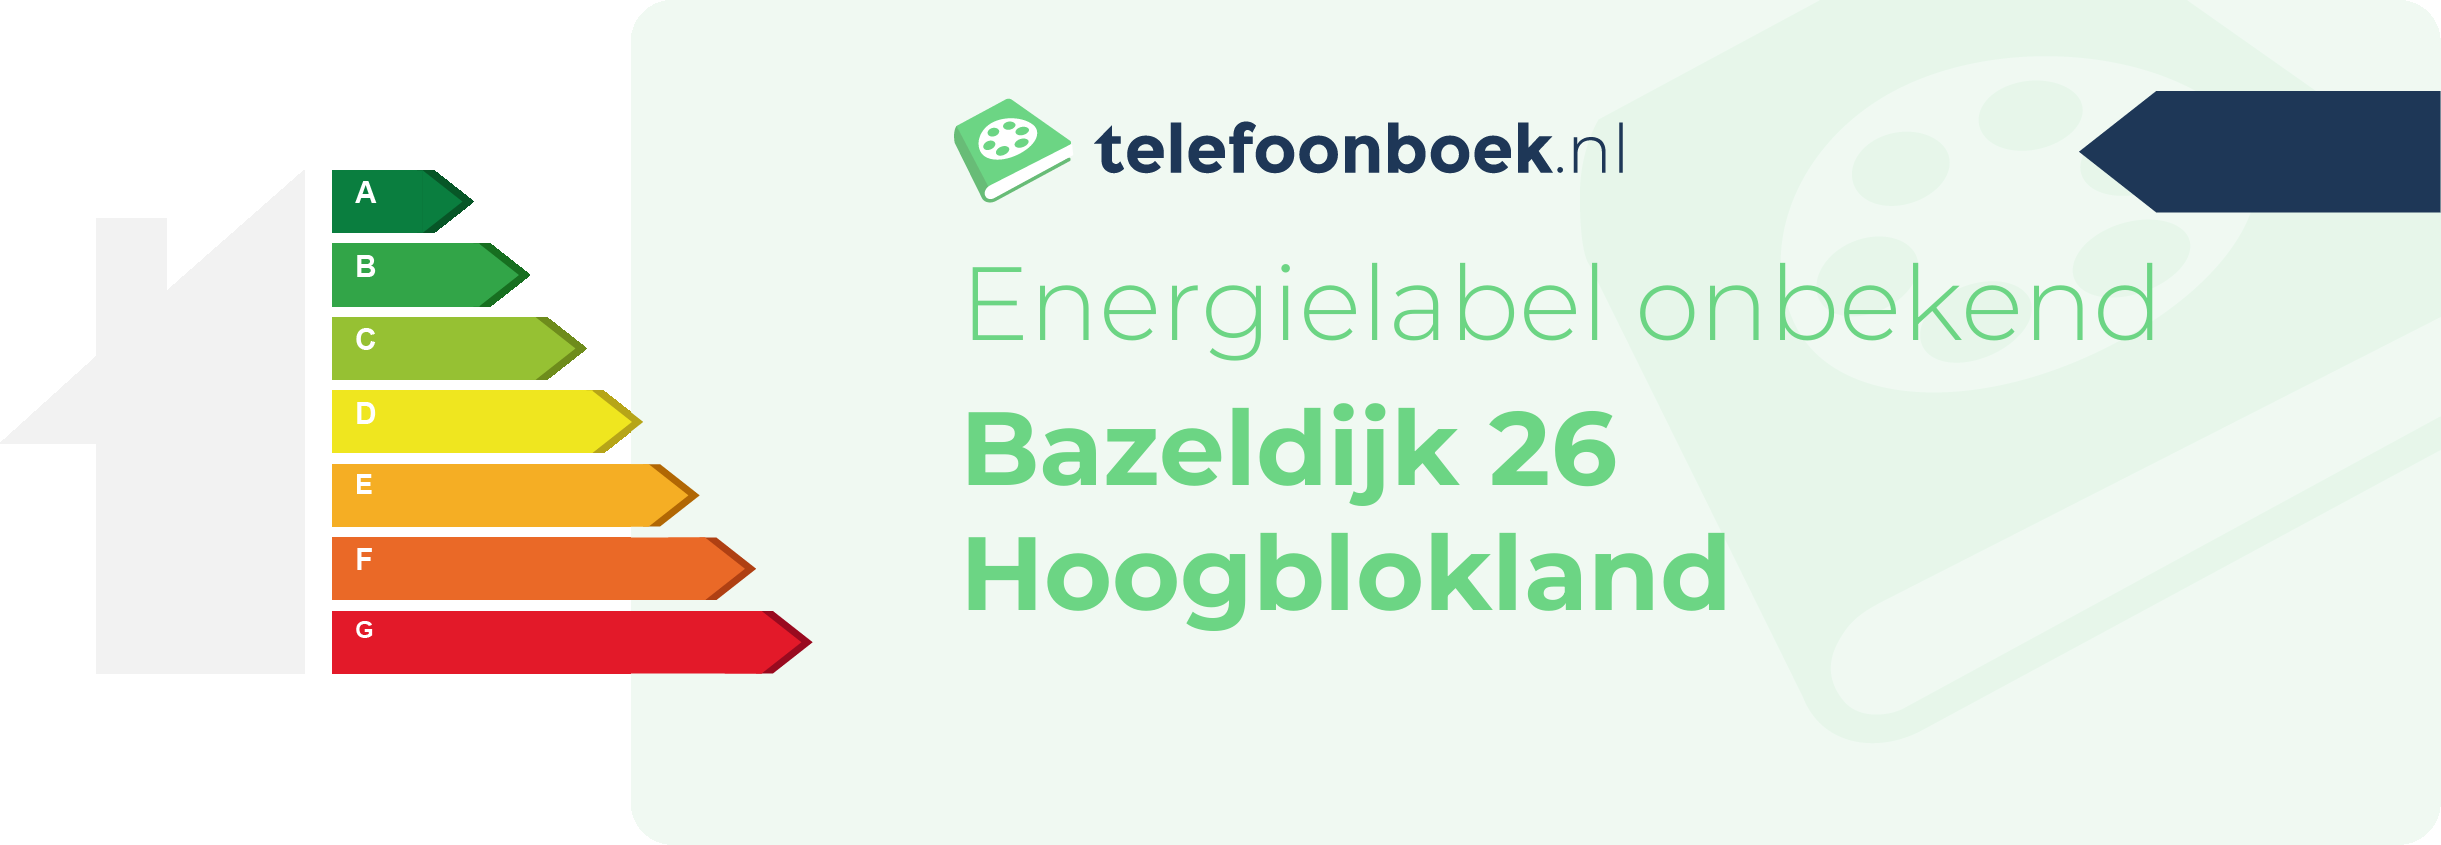 Energielabel Bazeldijk 26 Hoogblokland